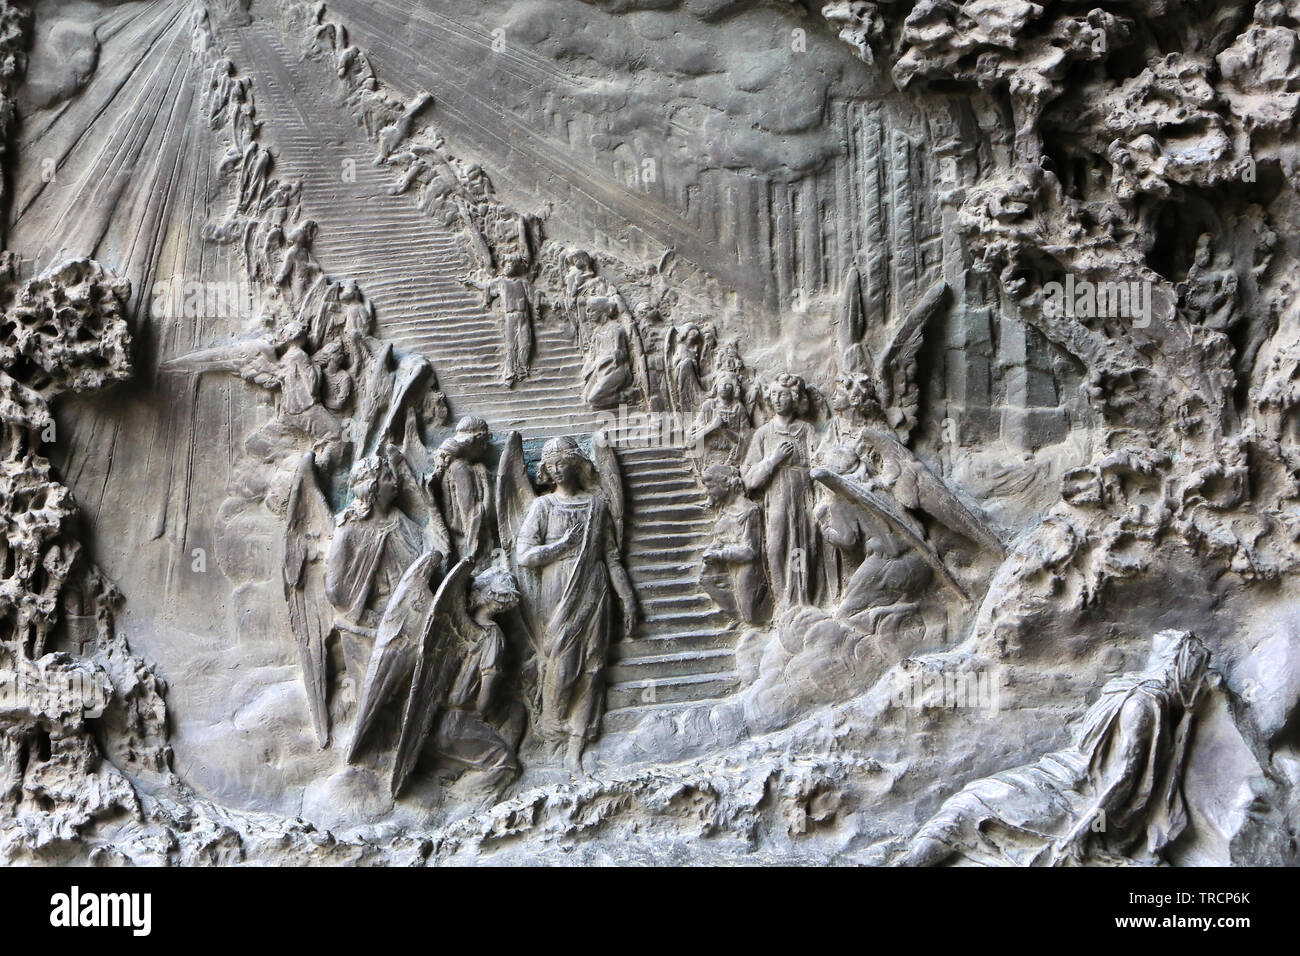 Porte en bronze sculptée. Basilique mineure (15ème siècle). Mont Sacré de Varallo Sesia. Italie. Basilic / église de Sacro Monte di Varallo Sesia. Banque D'Images